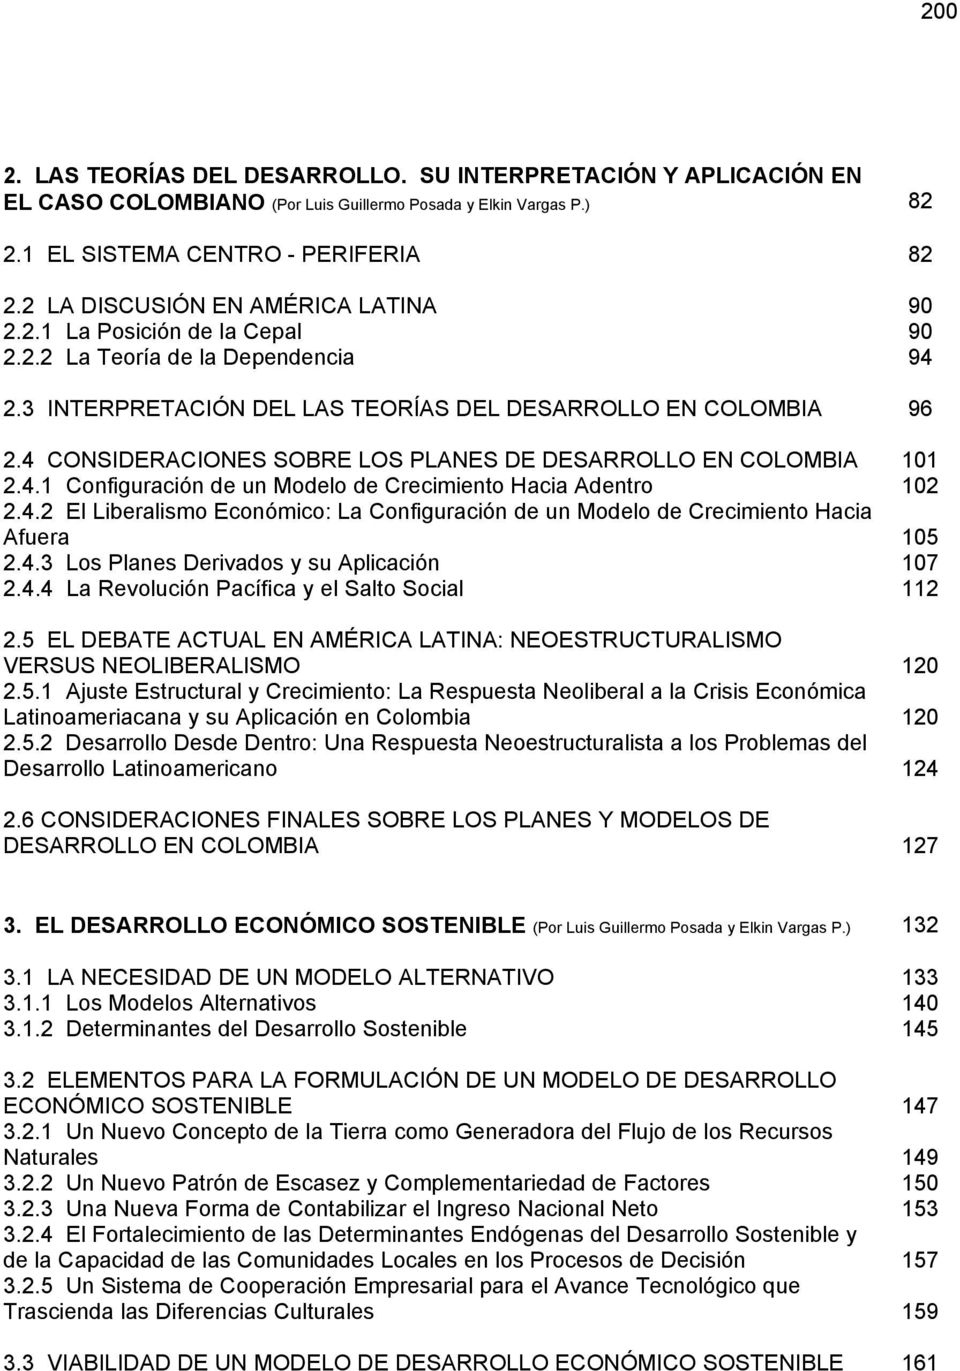 4 CONSIDERACIONES SOBRE LOS PLANES DE DESARROLLO EN COLOMBIA 101 2.4.1 Configuración de un Modelo de Crecimiento Hacia Adentro 102 2.4.2 El Liberalismo Económico: La Configuración de un Modelo de Crecimiento Hacia Afuera 105 2.